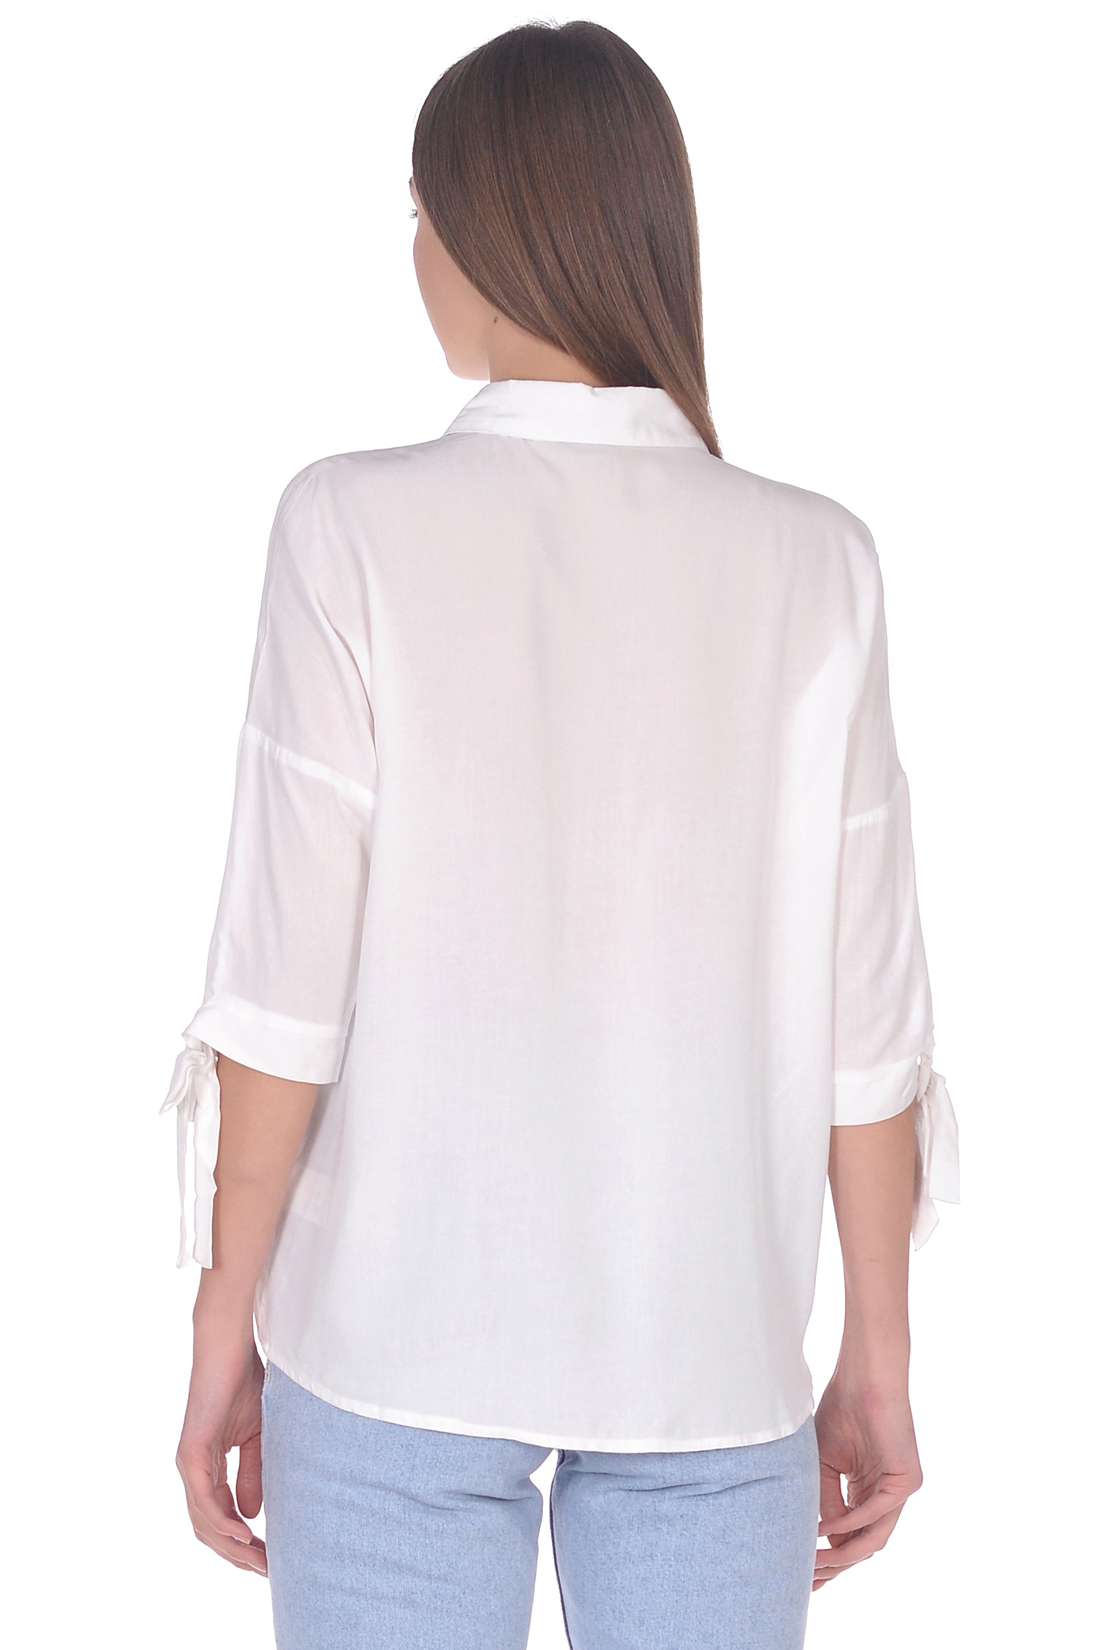 Блузка с завязками на рукавах (арт. baon B179039), размер S, цвет белый Блузка с завязками на рукавах (арт. baon B179039) - фото 2